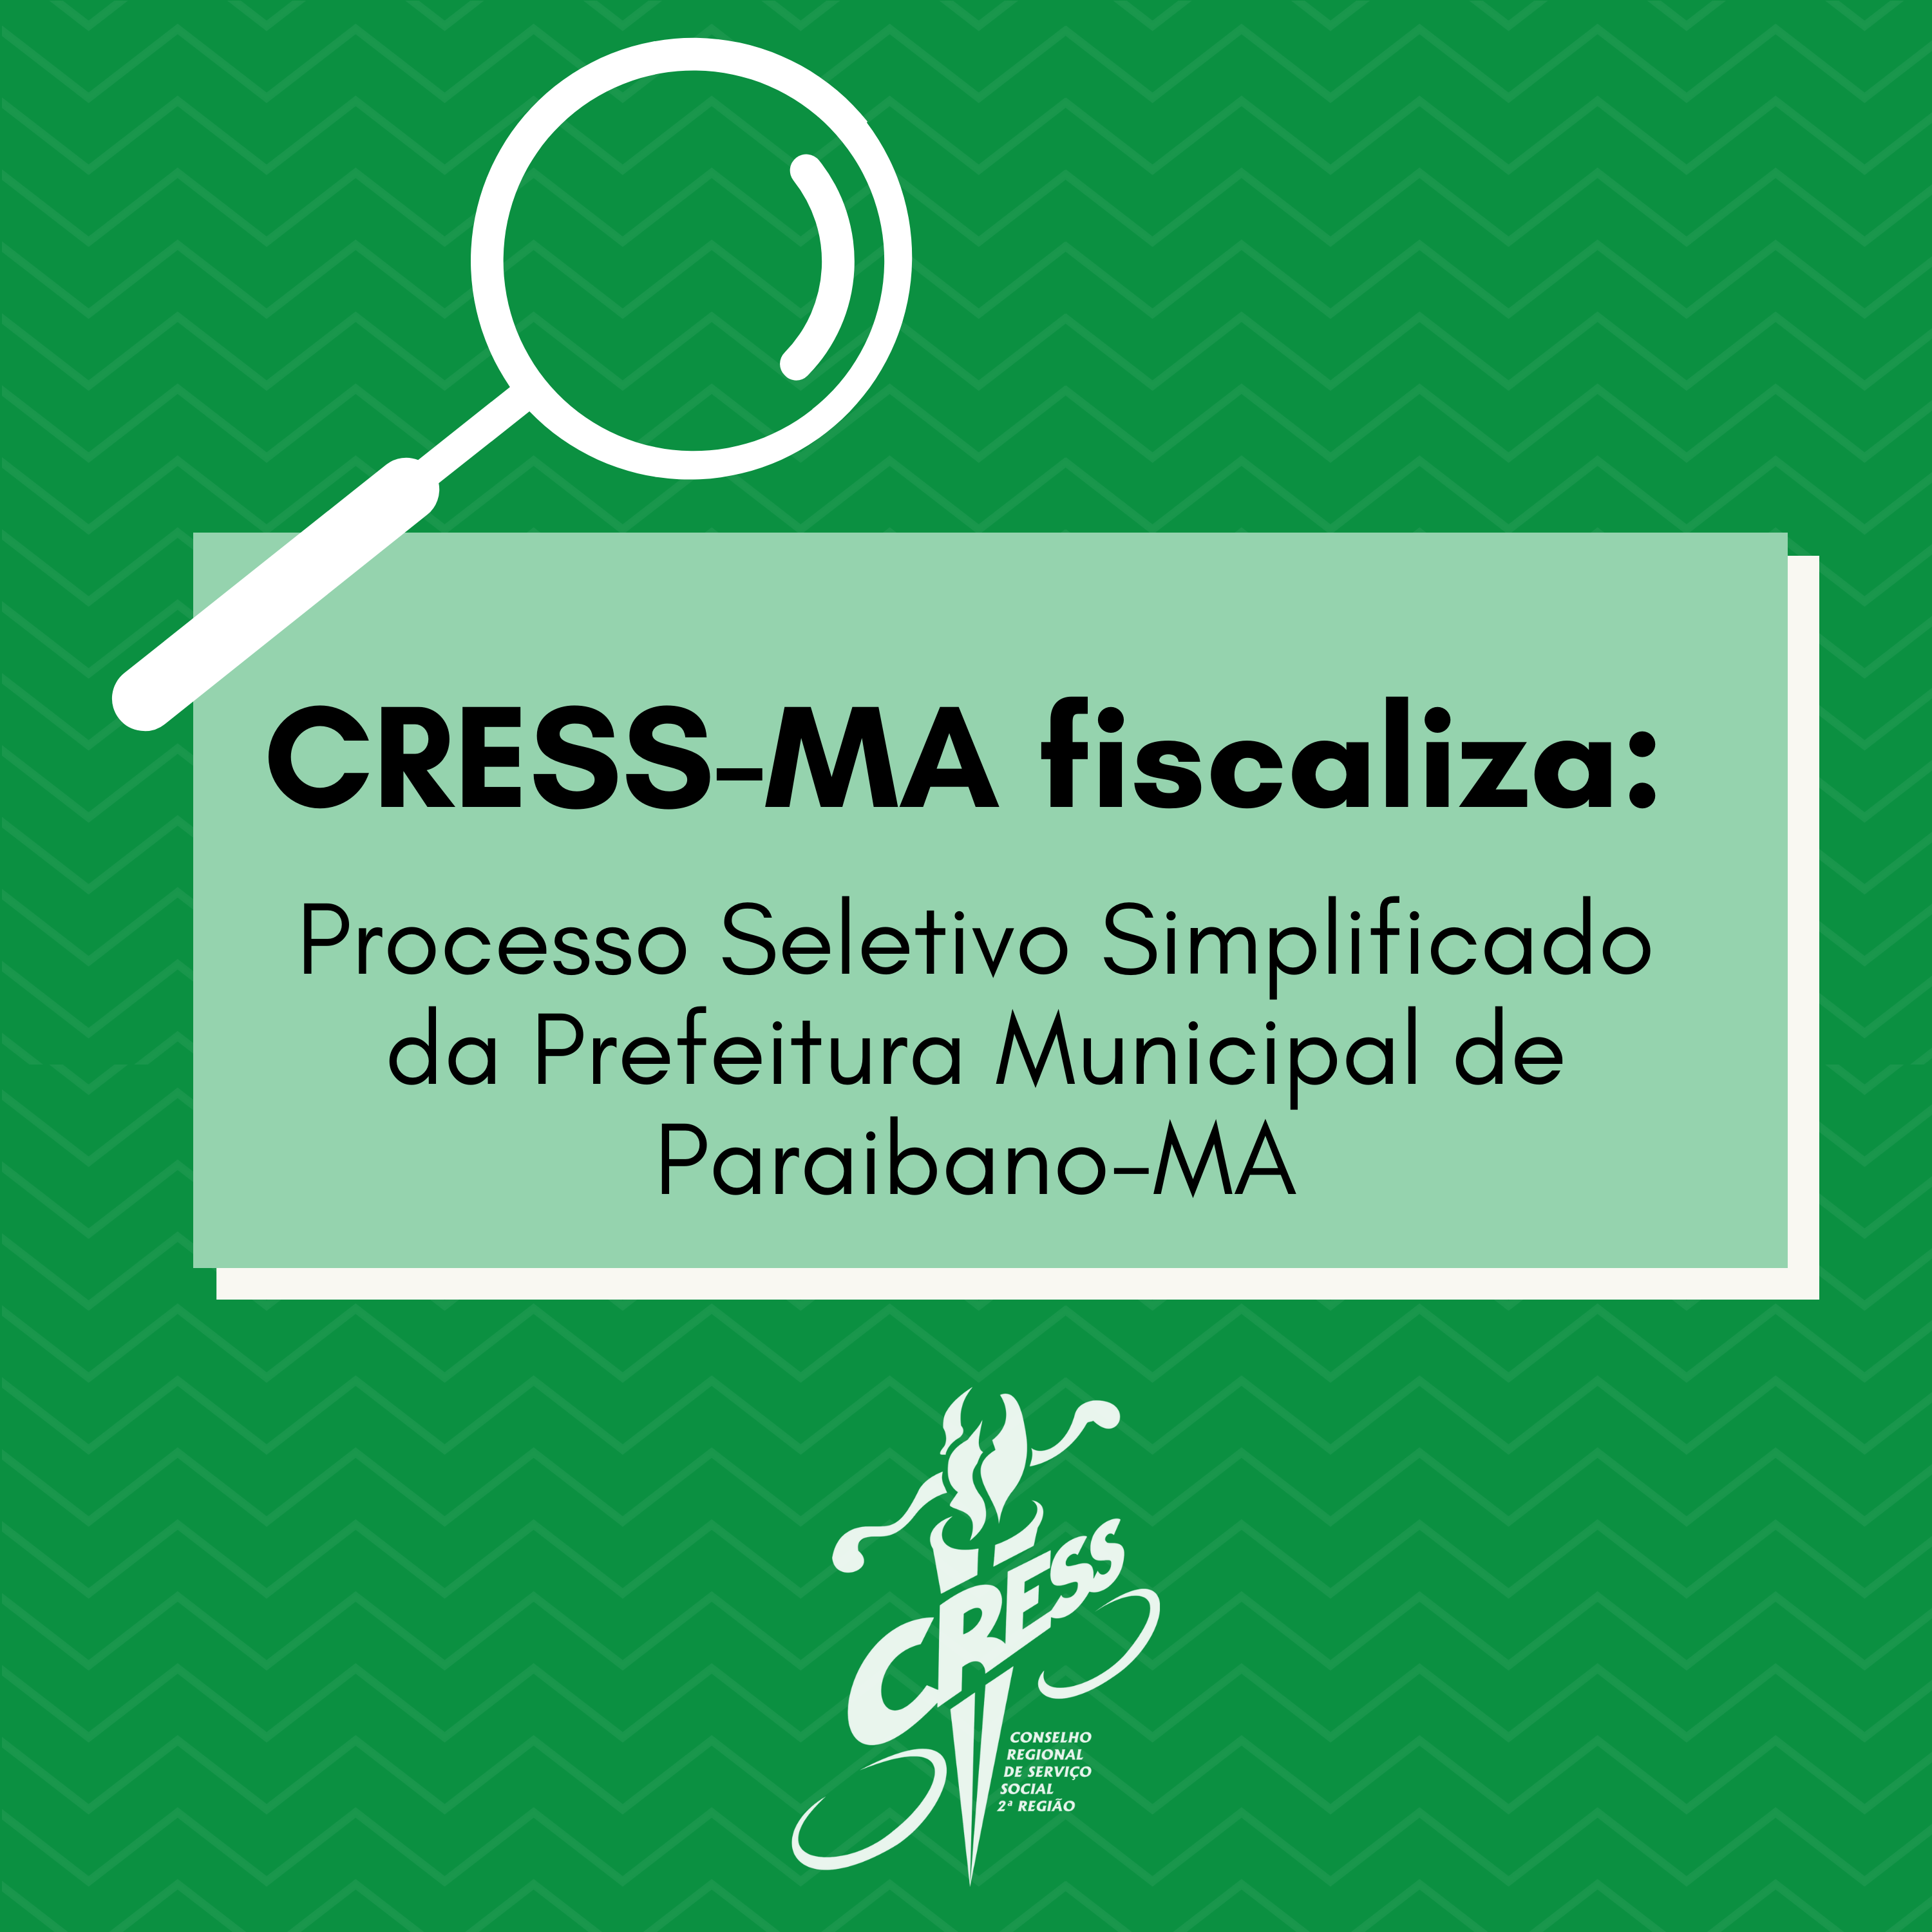 CRESS-MA fiscaliza processo seletivo (1)